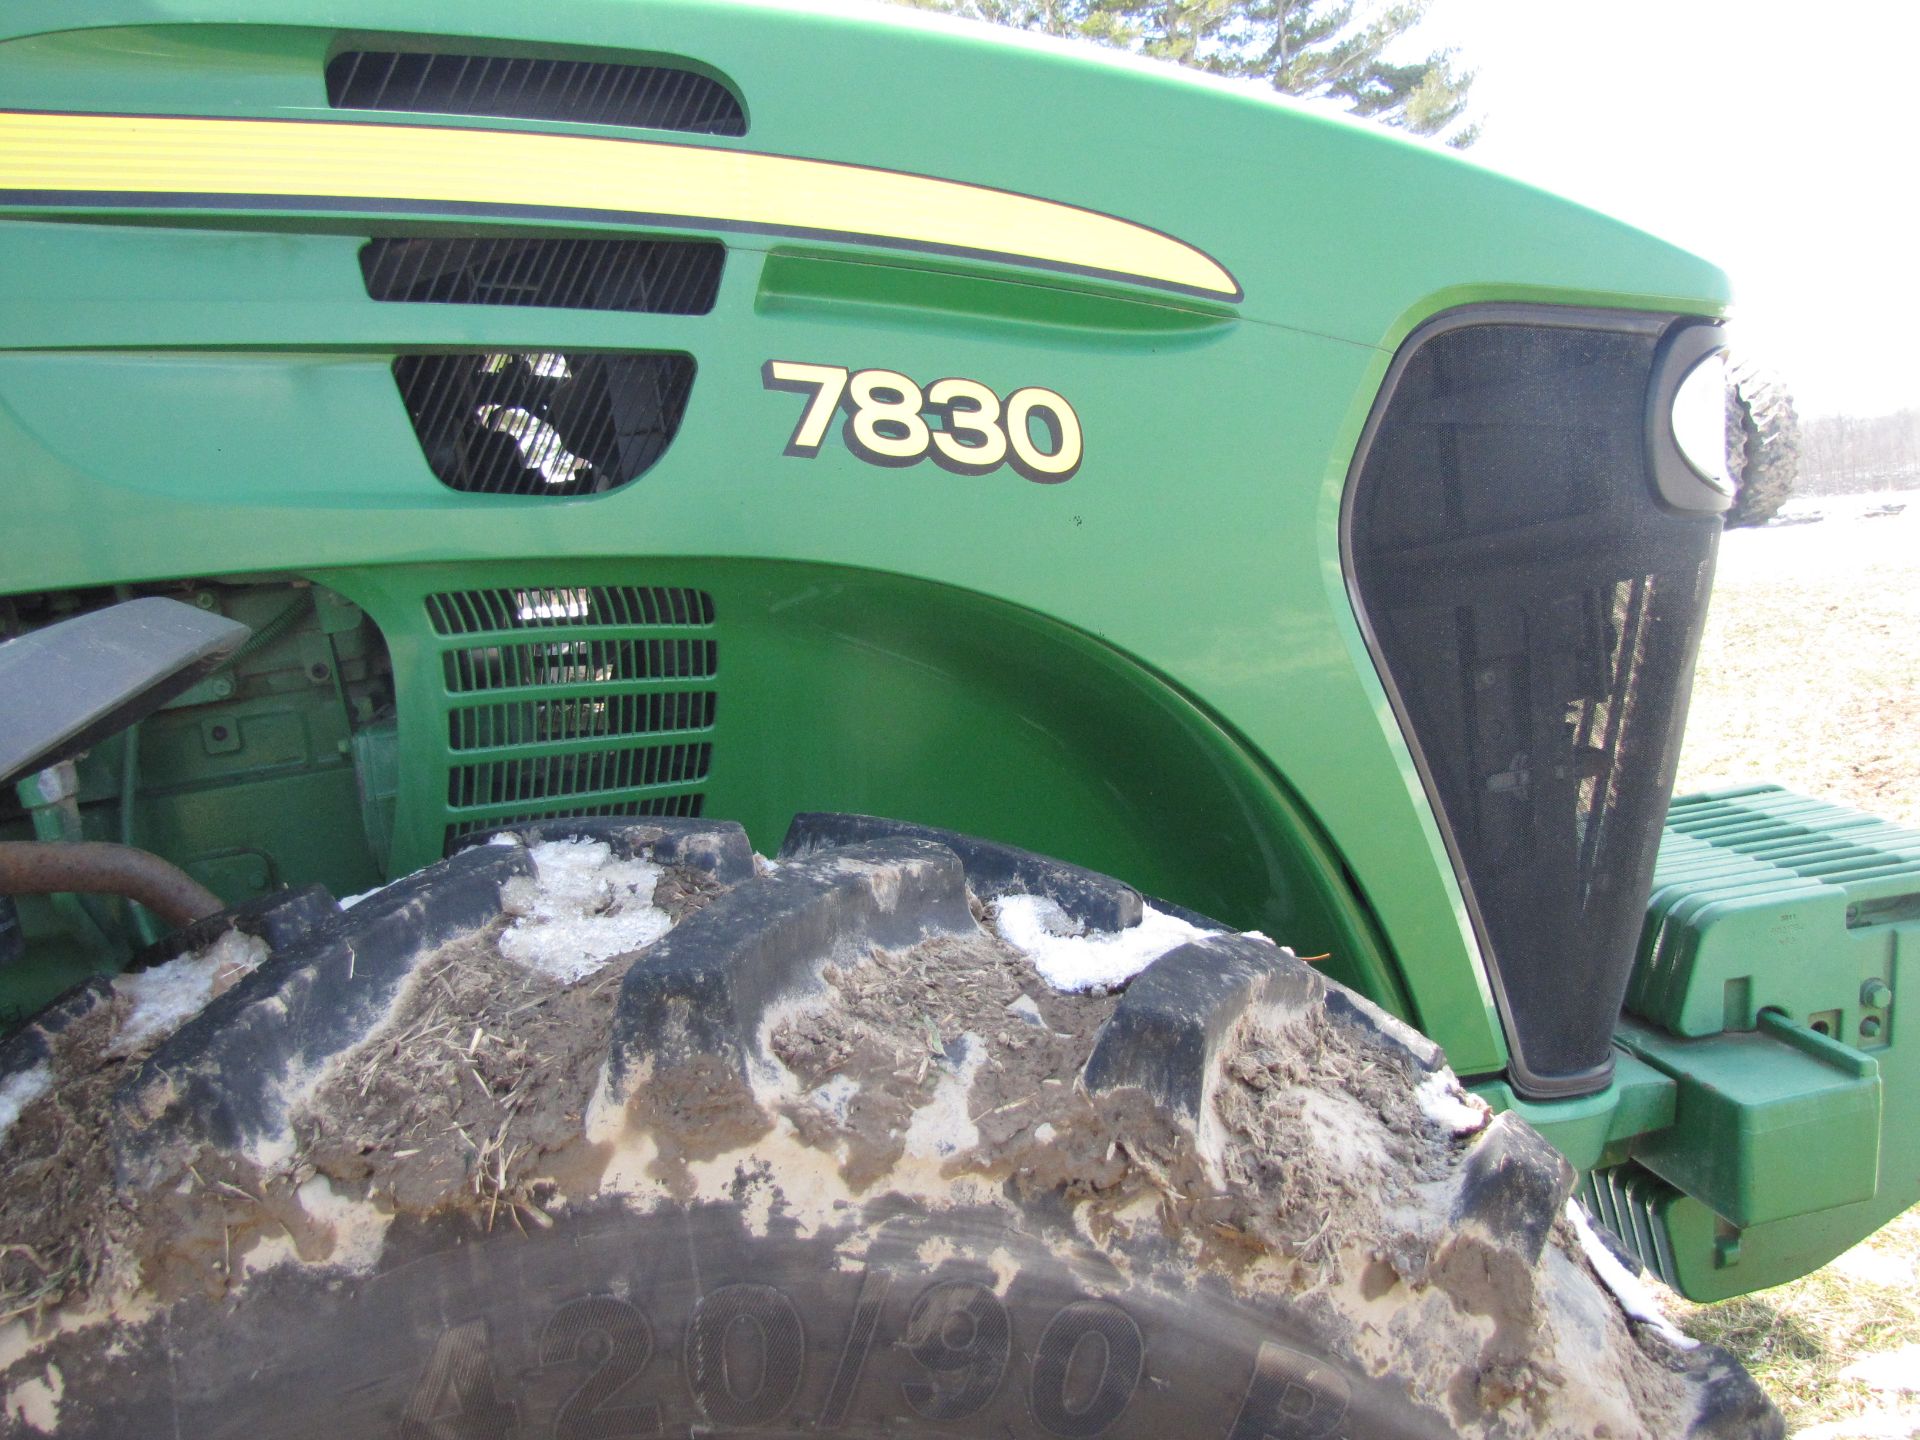 John Deere 7830 tractor - Image 12 of 43